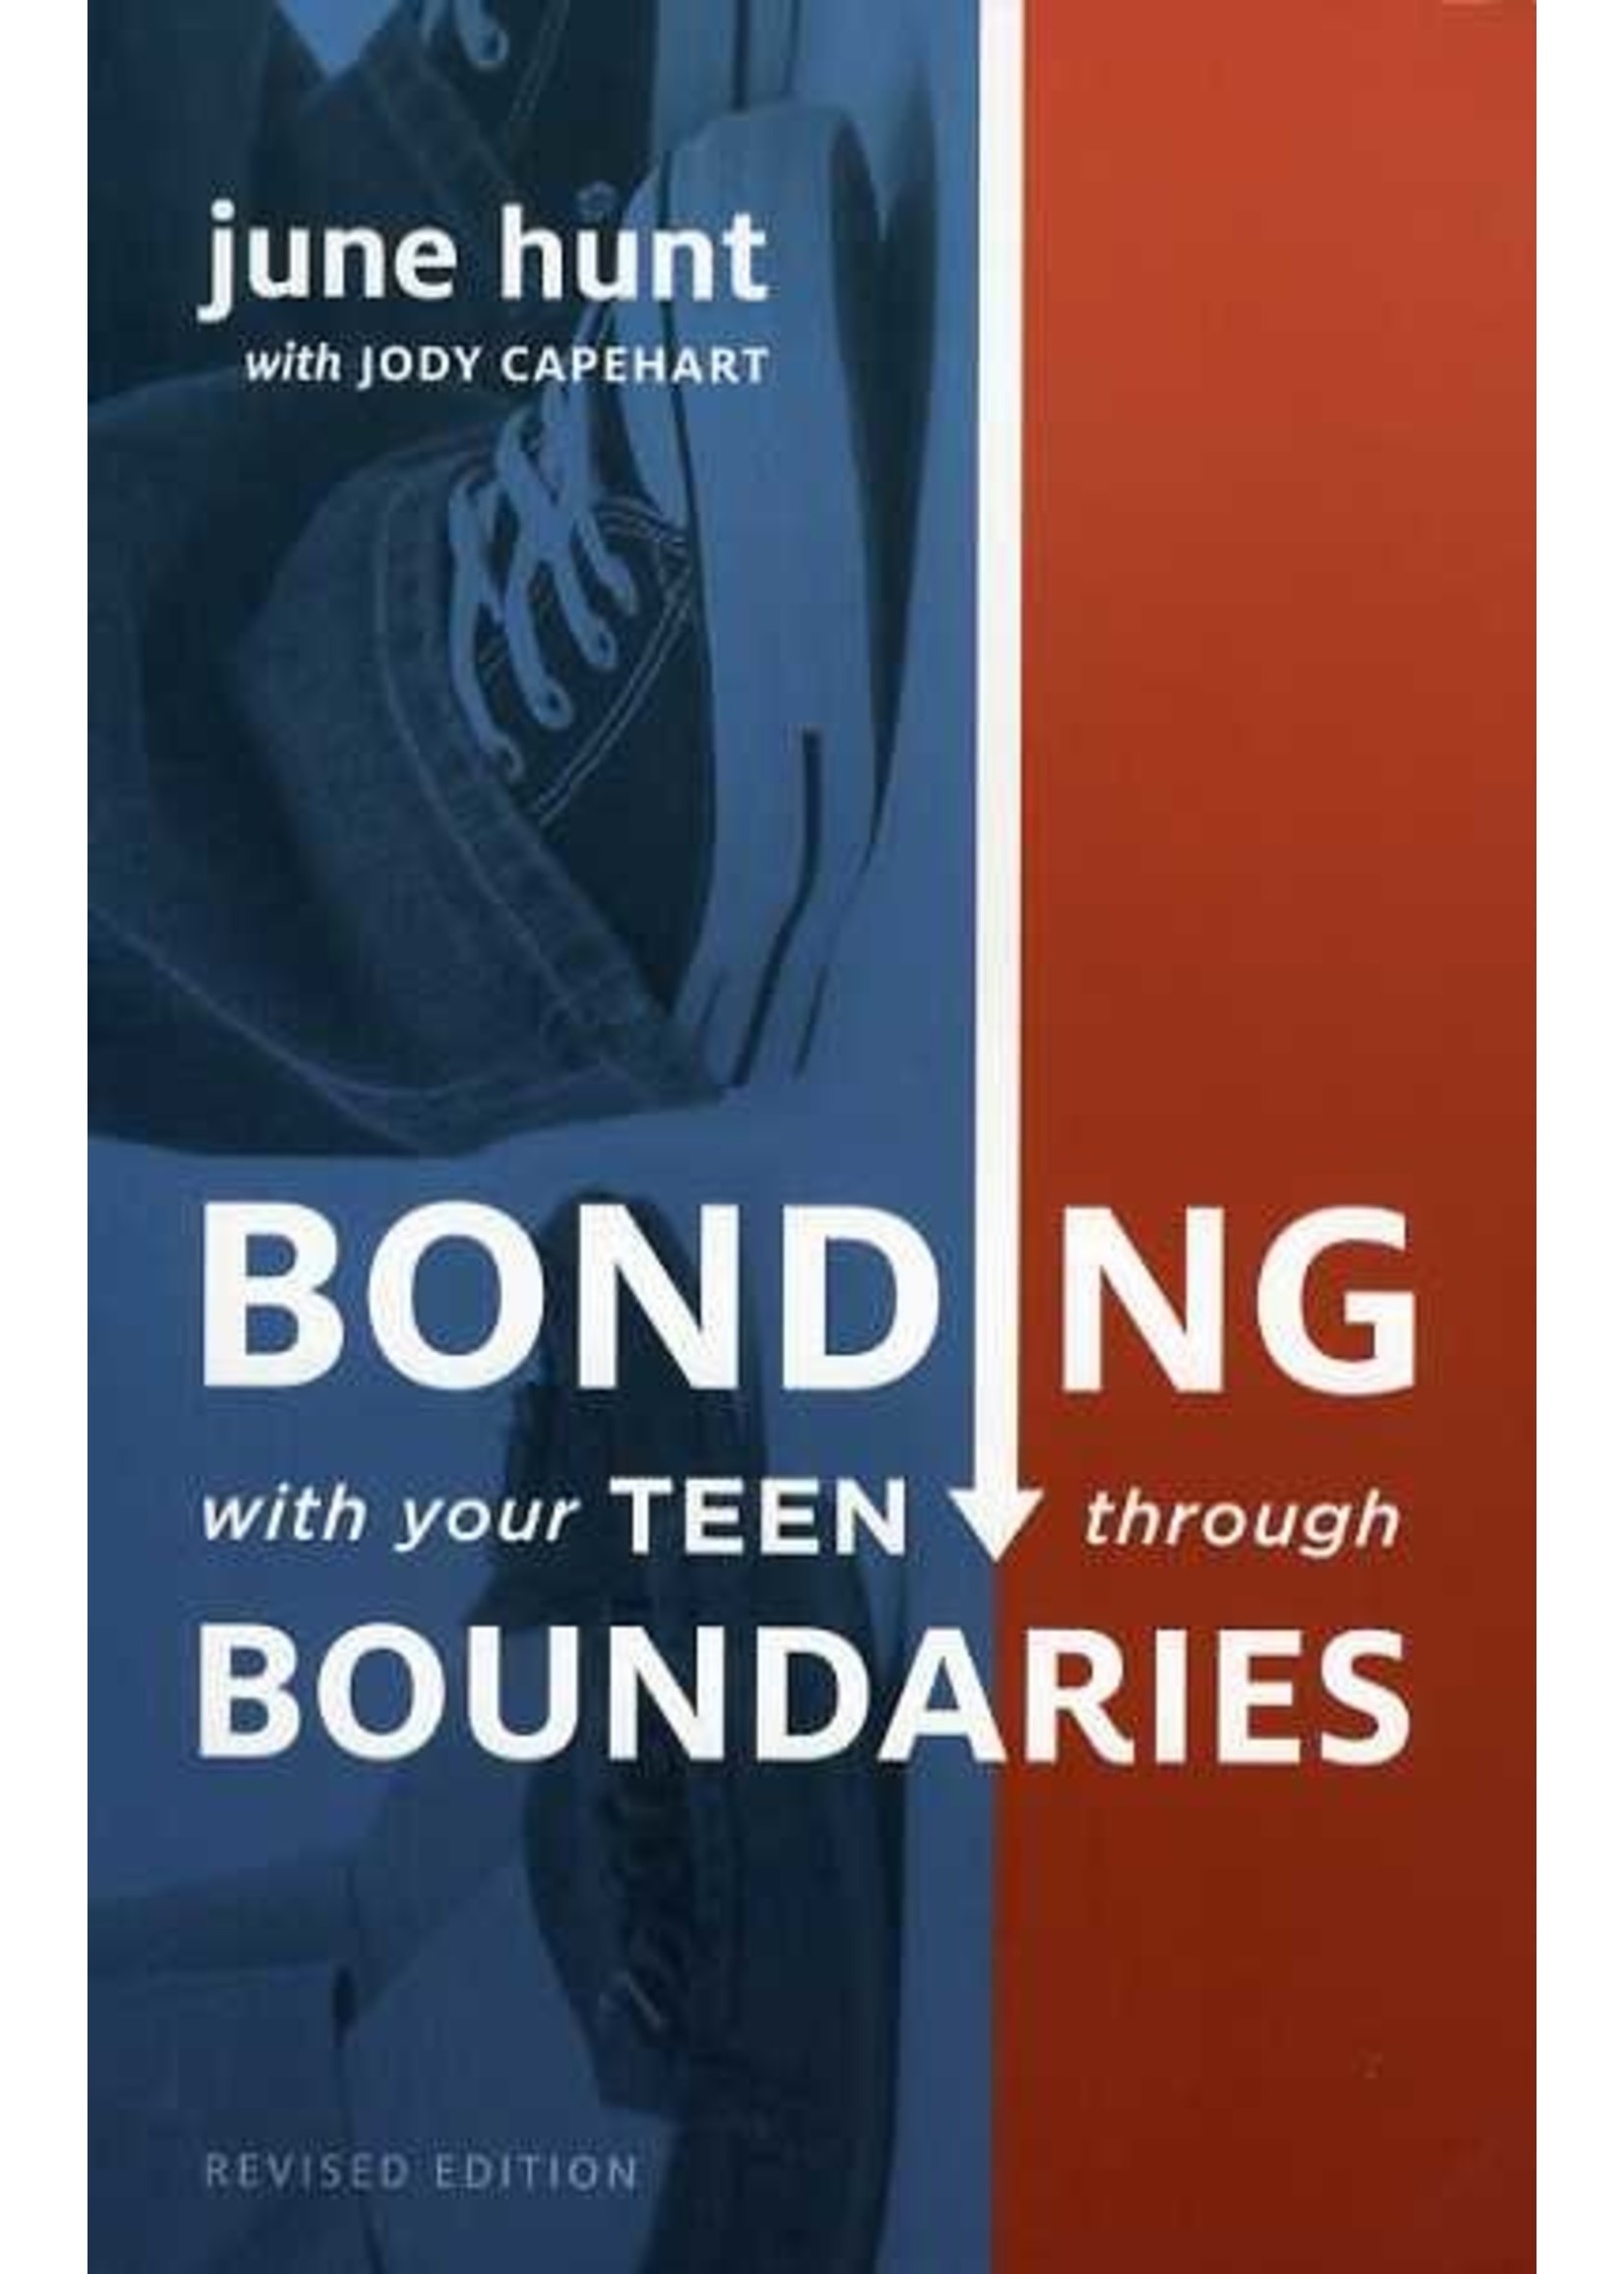 Crossway Bonding with Your Teen Through Boundaries - June Hunt